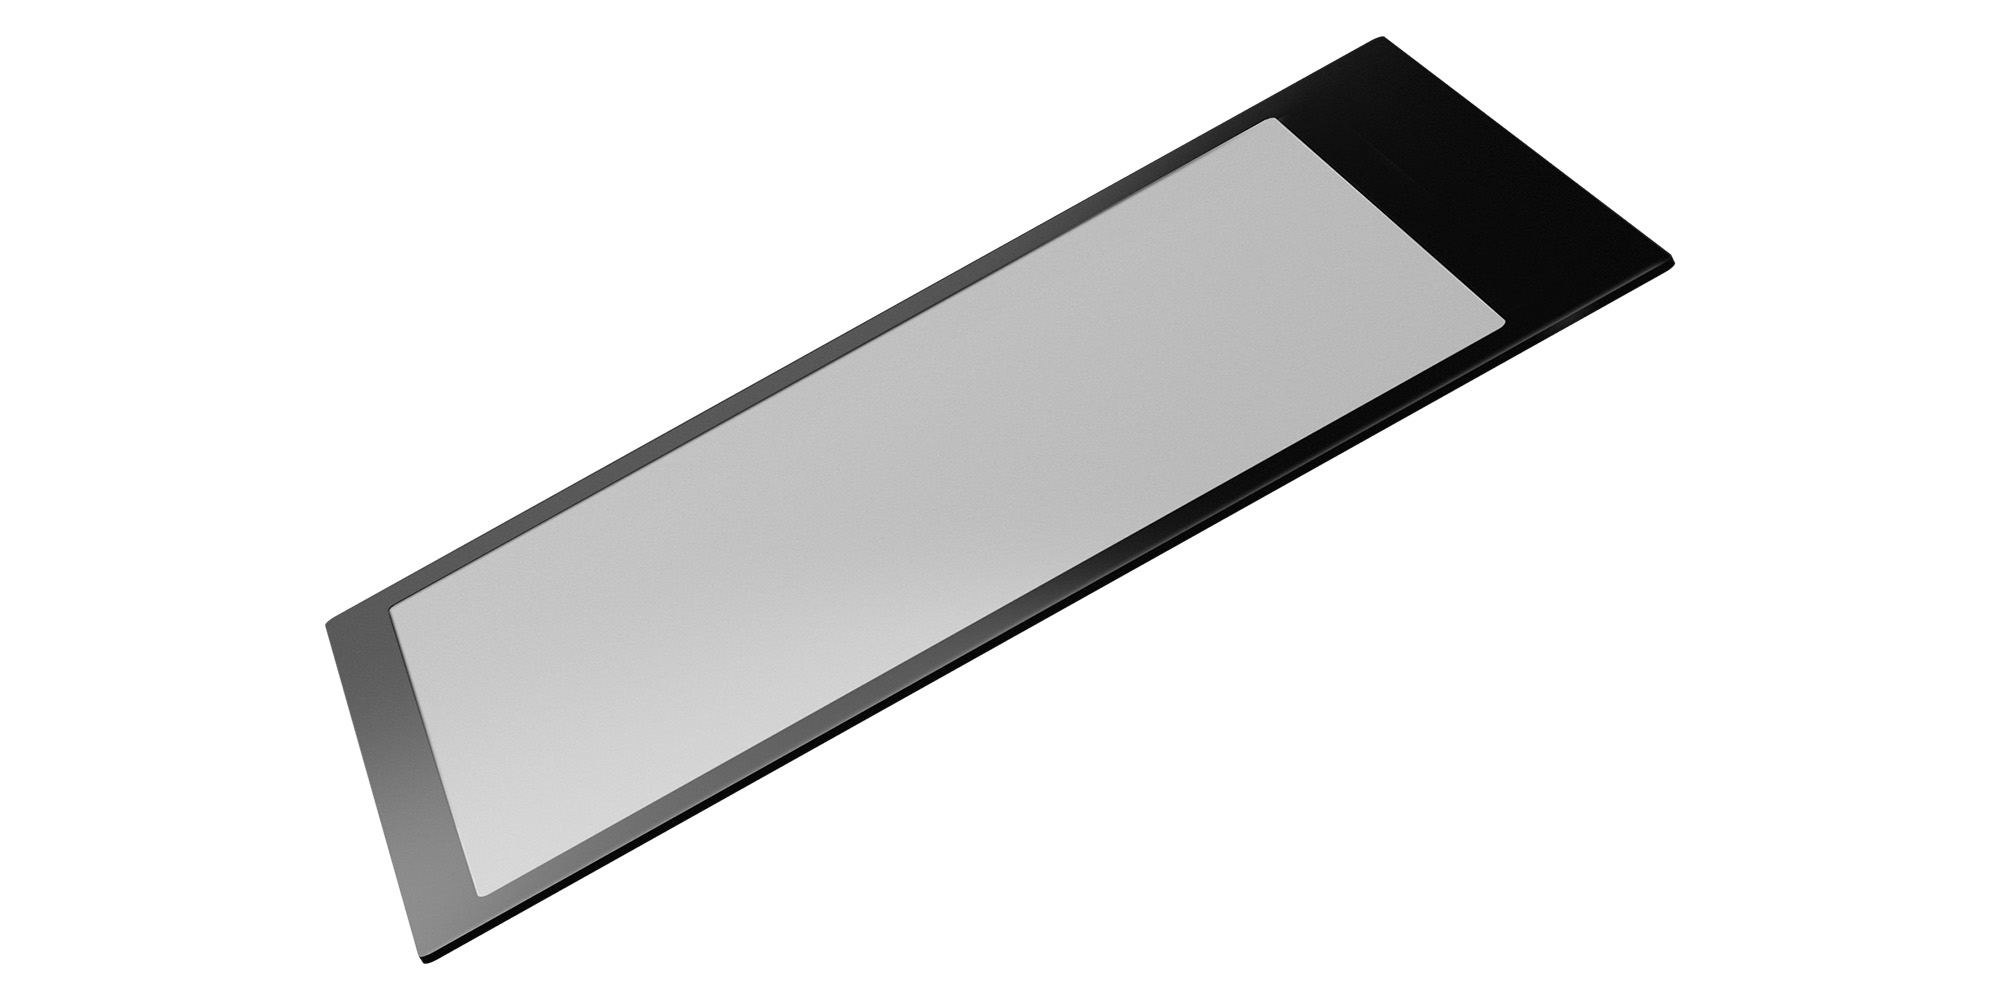 GGS Larmor LCD Shield for Nikon Z fc